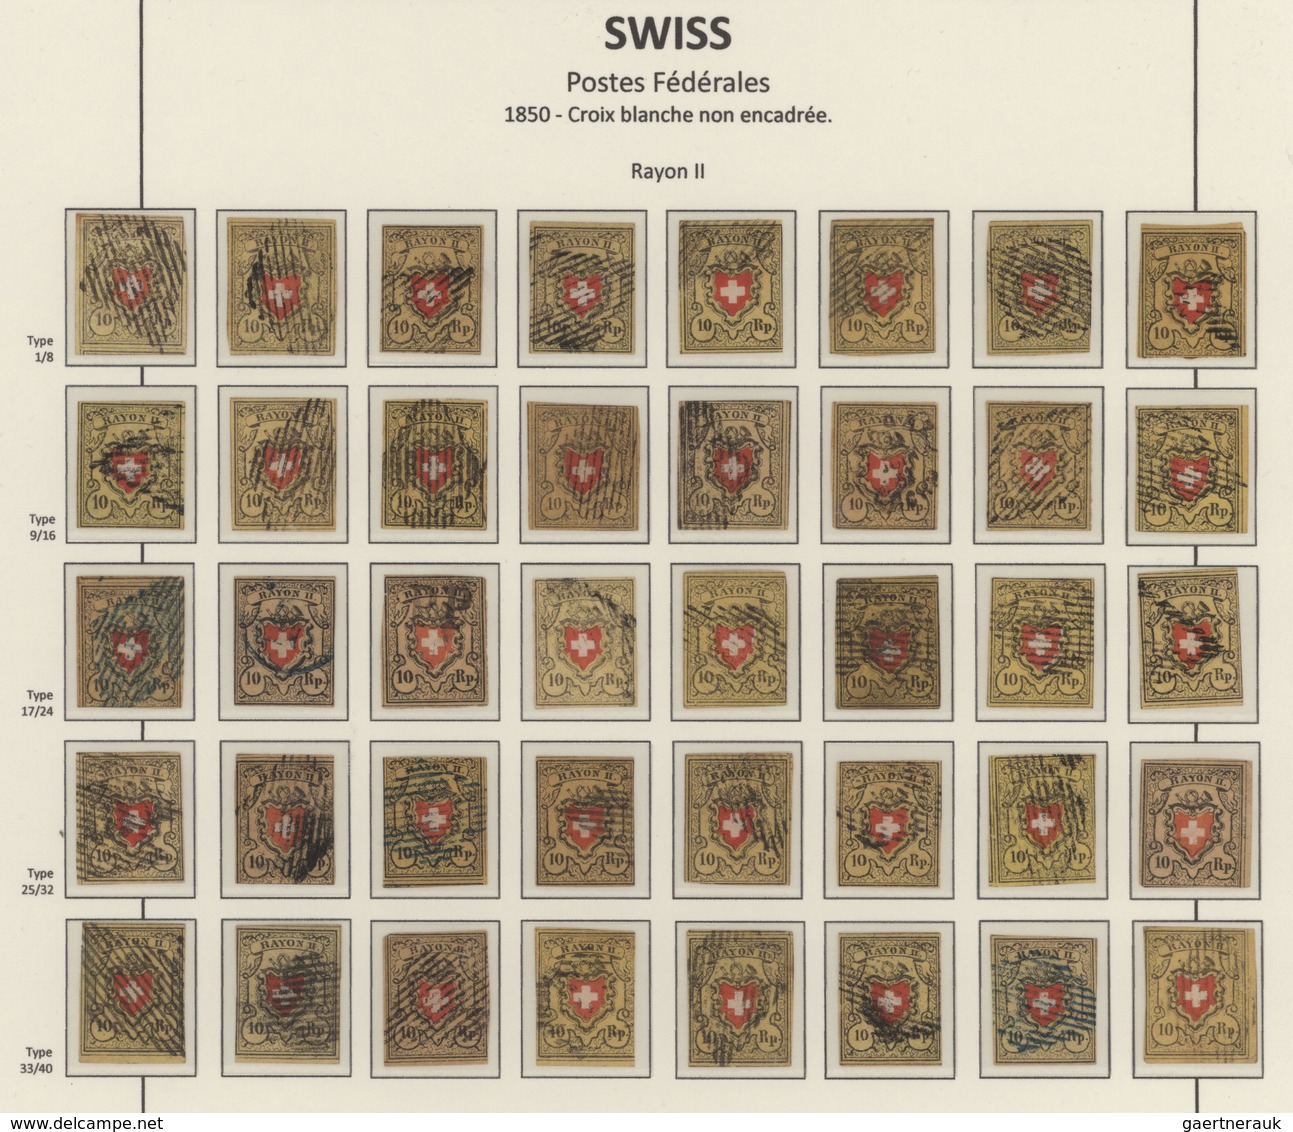 Schweiz: 1850-52 TYPENTAFELN: Kollektion Von Vier Typentafeln Der Rayonmarken, Mit 33 Typen Der Rayo - Sammlungen